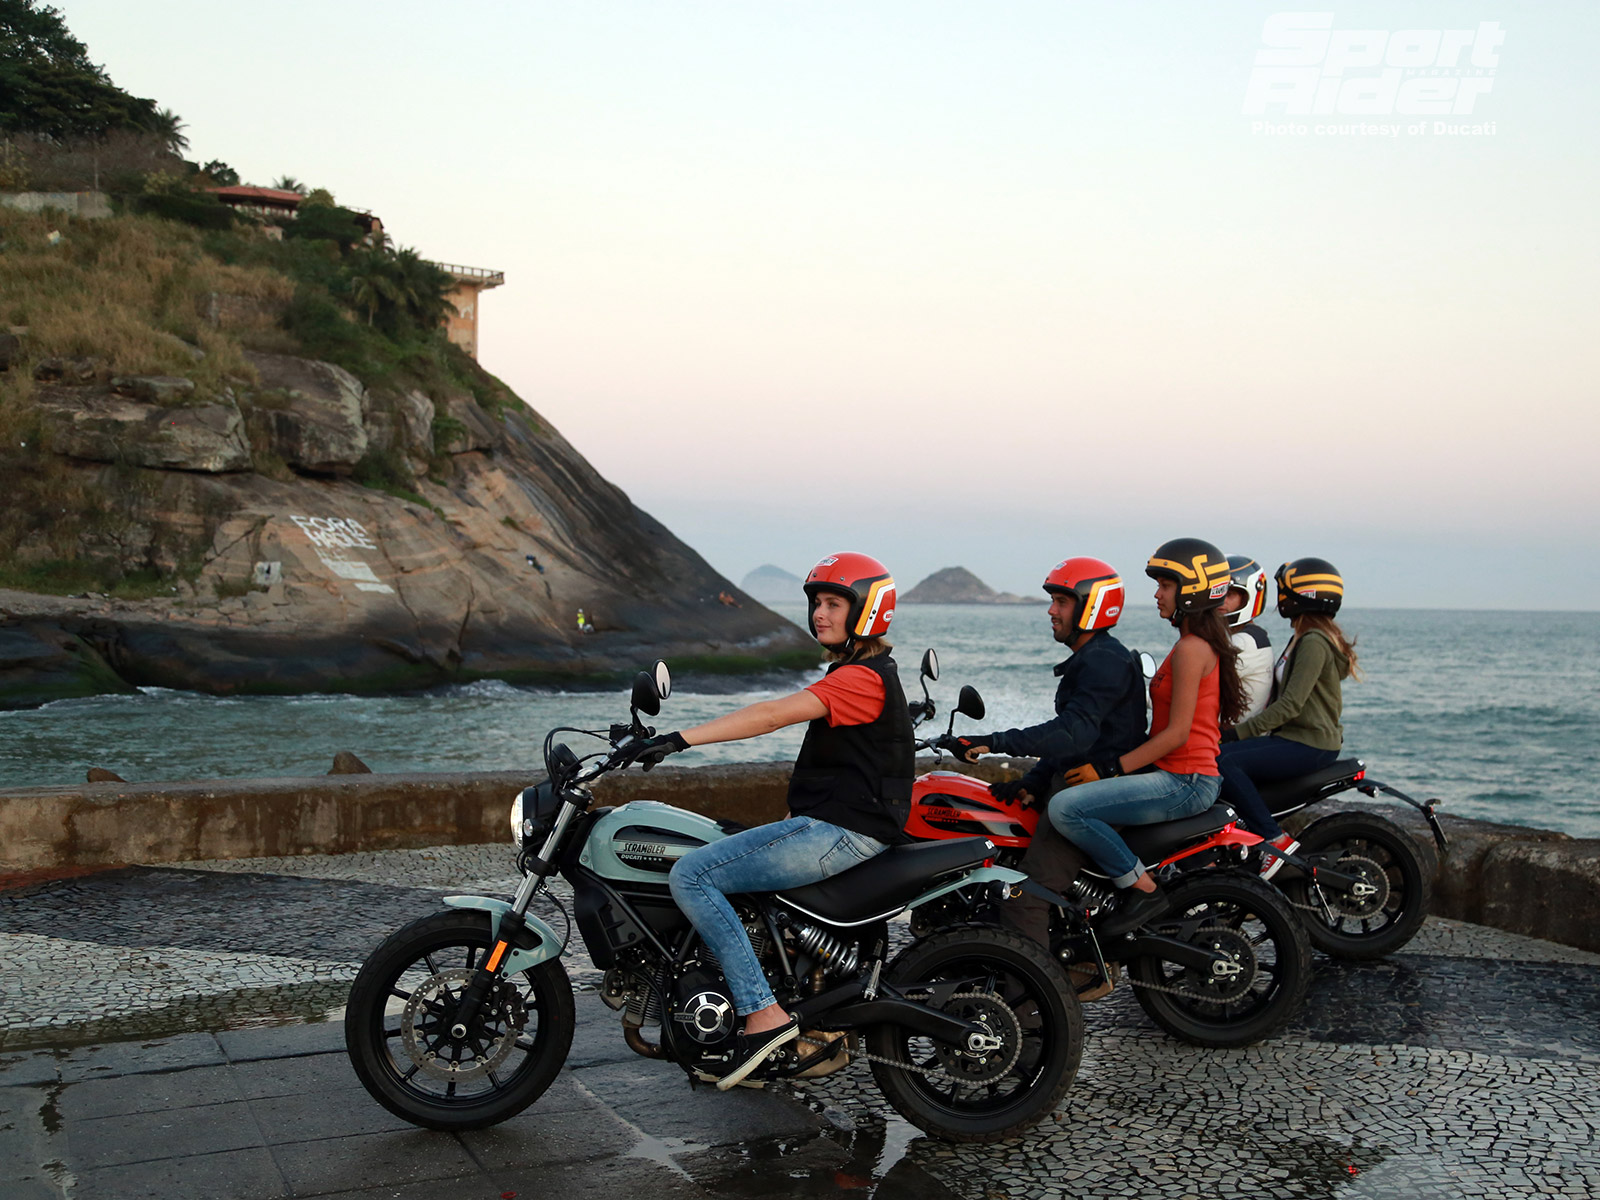 Ducati Scrambler Sixty2 Hi Res , HD Wallpaper & Backgrounds